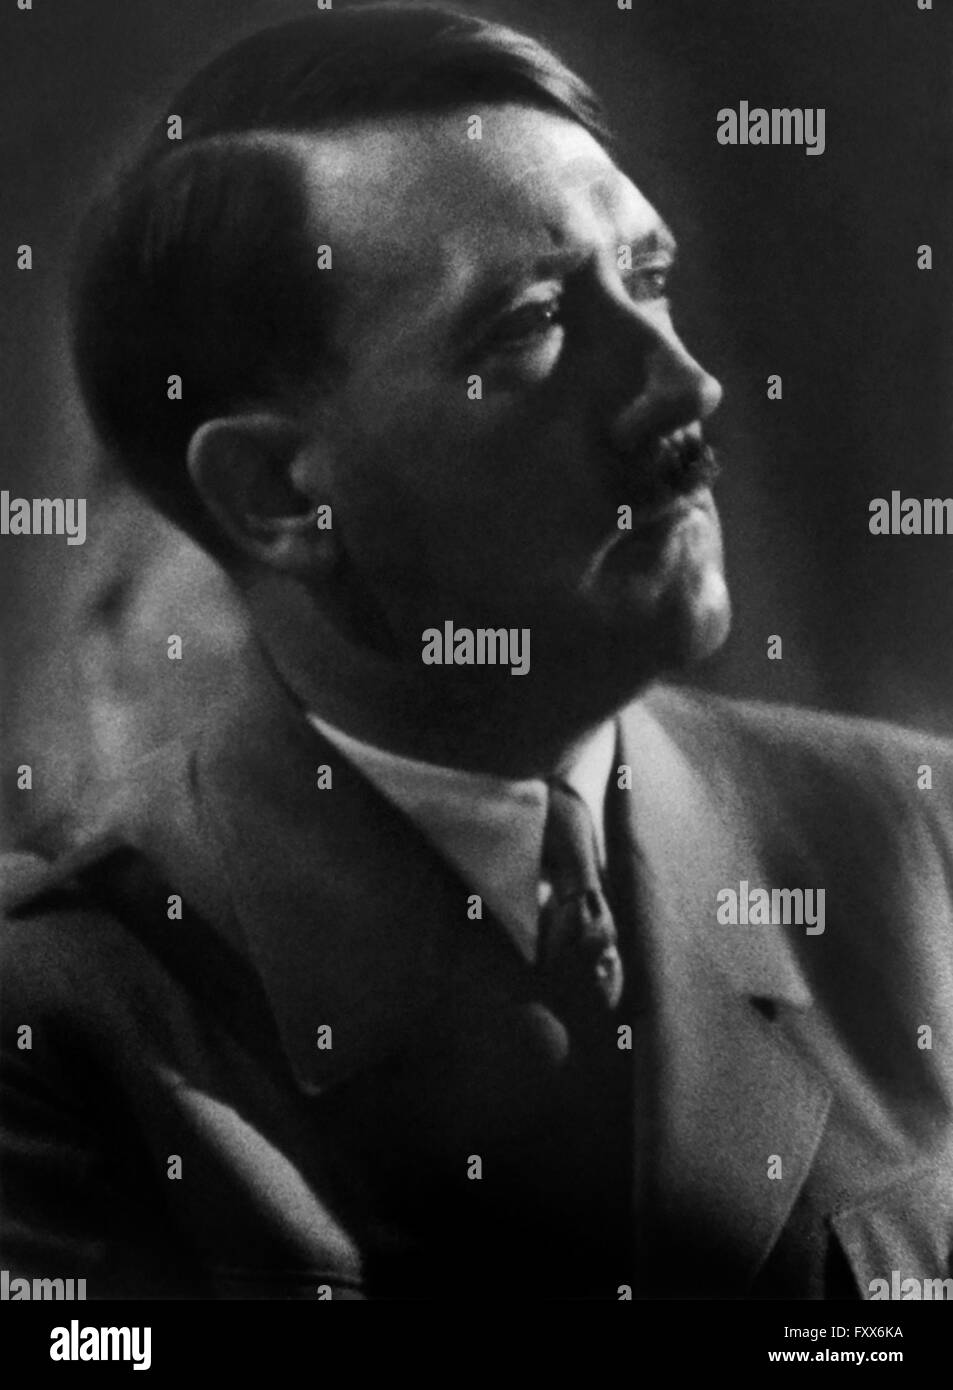 Adolph Hitler (1889-1945) è stato il leader della Germania nazista dal 1934 al 1945, iniziatore della II Guerra Mondiale, e il più influente di voce nella tortura e esecuzione di milioni nell'Olocausto. Foto Stock